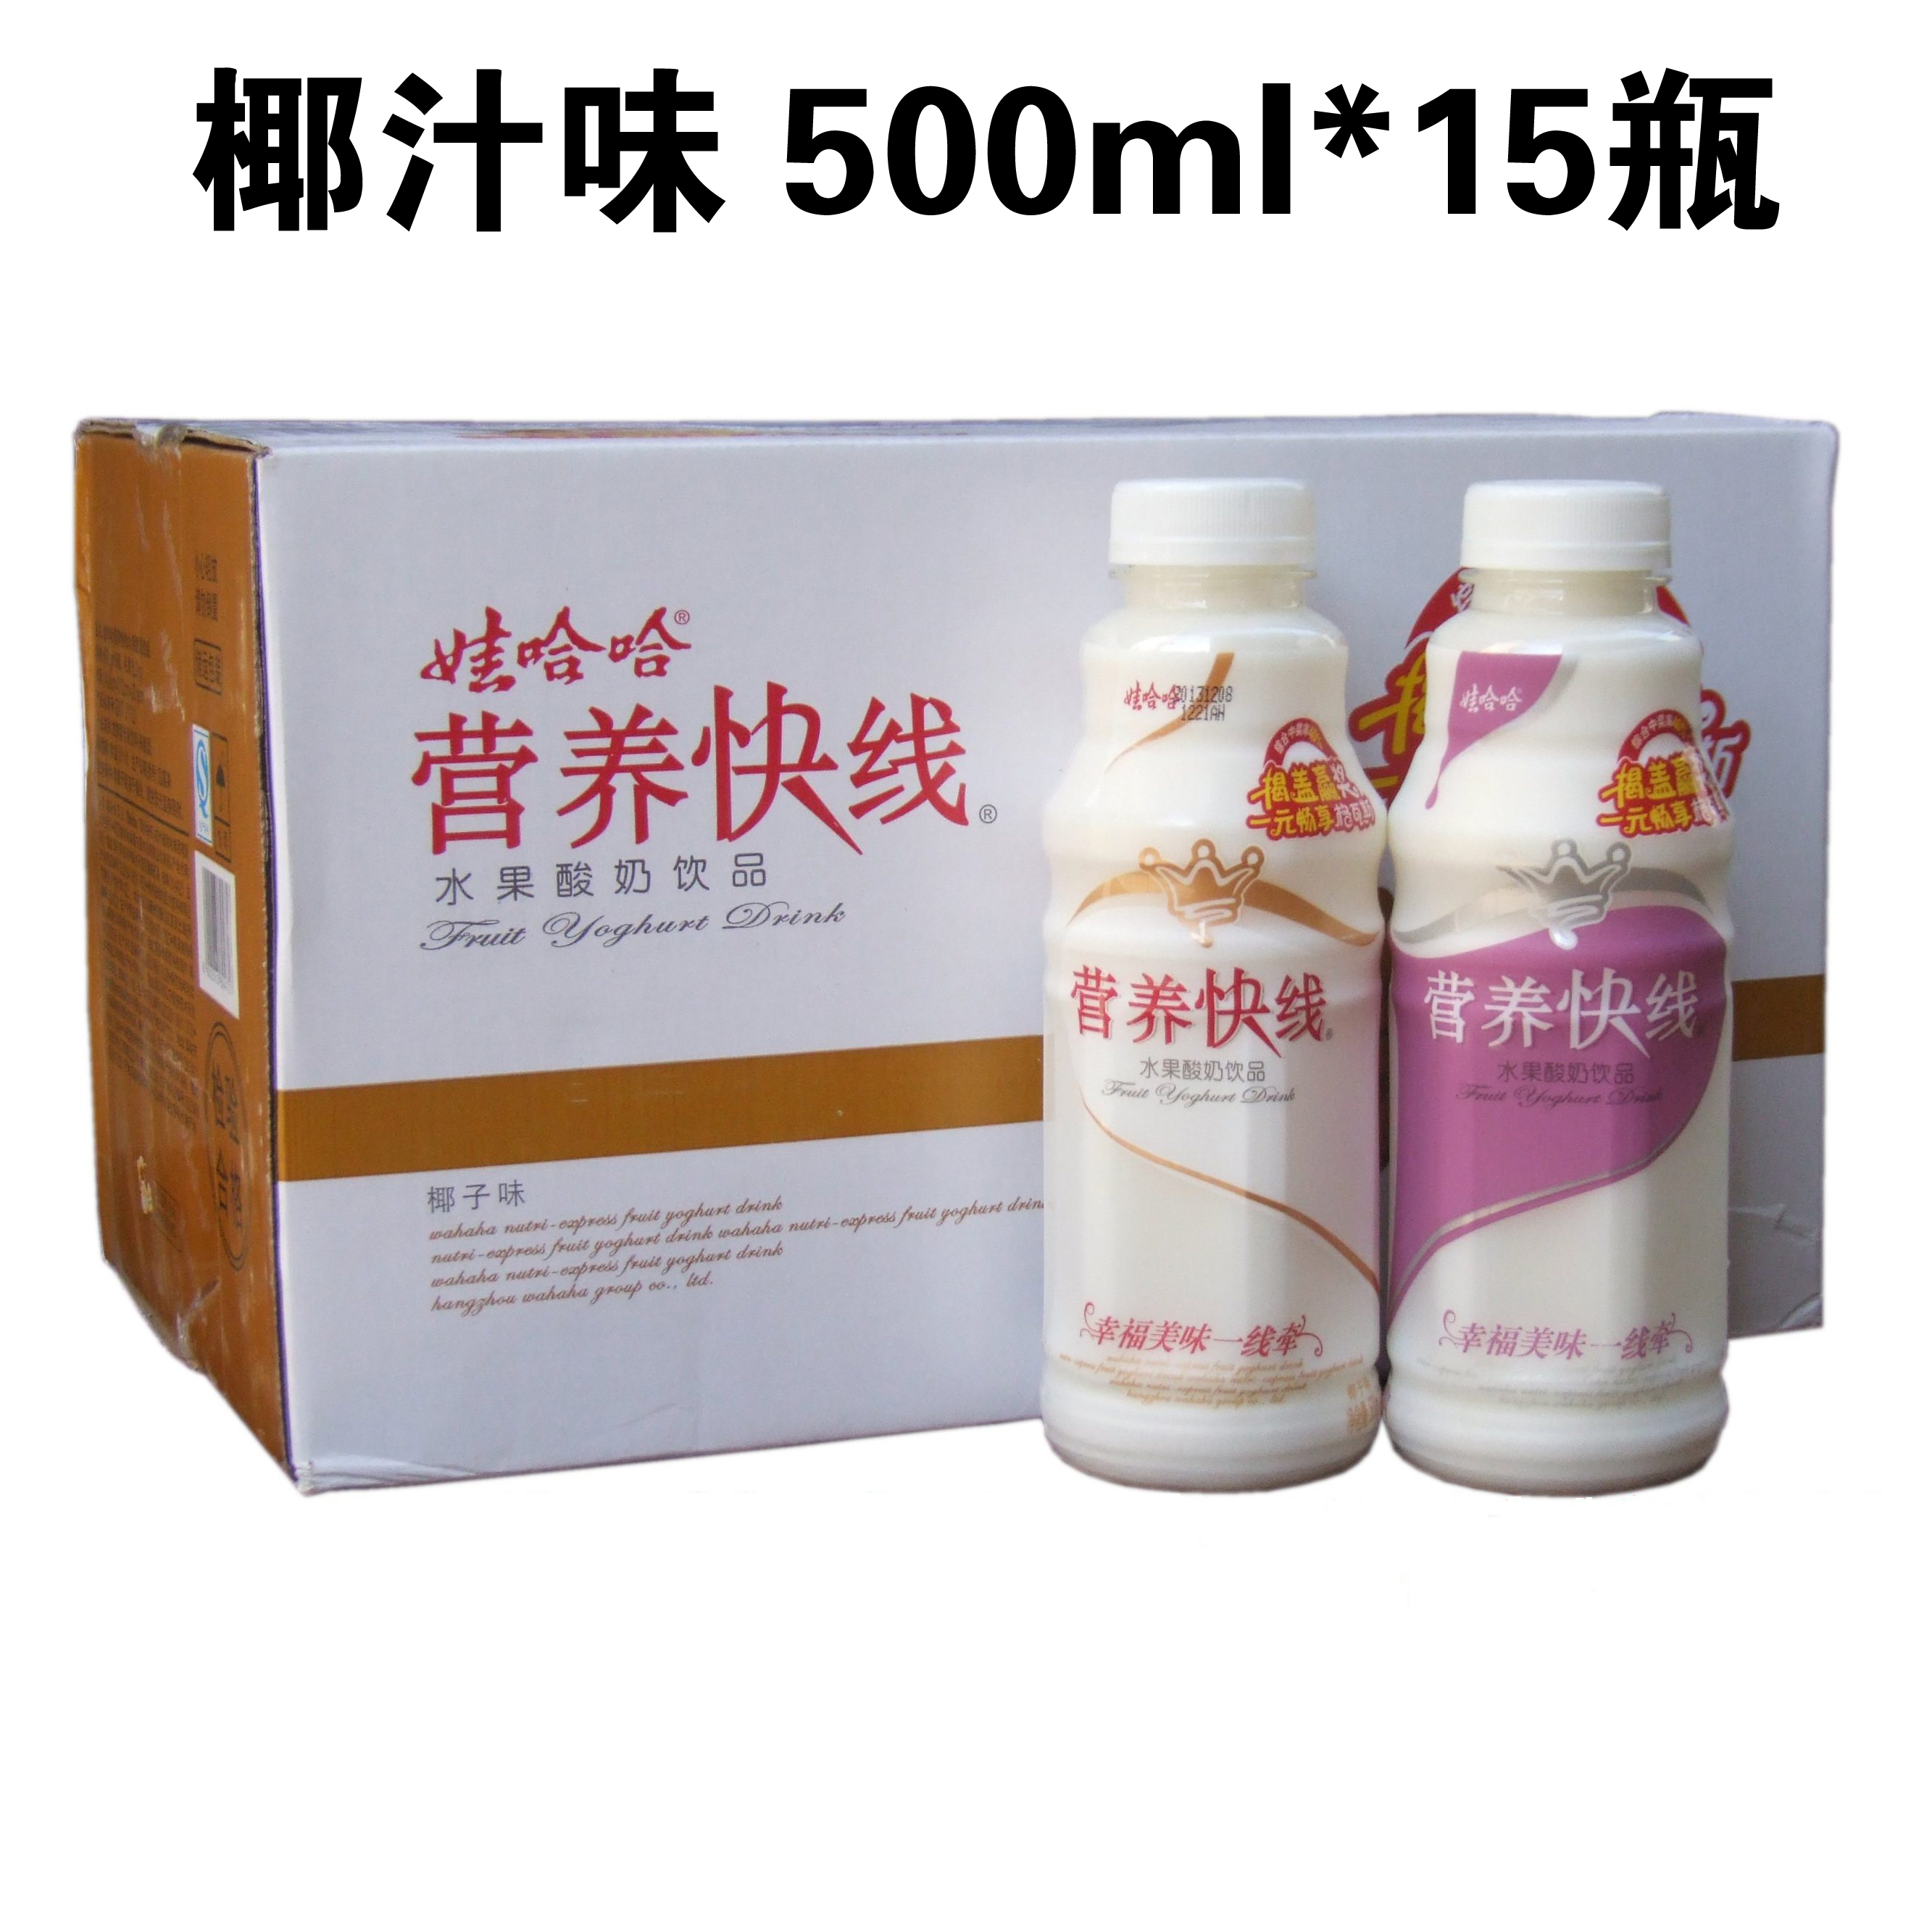 娃哈哈 营养快线 椰汁味500ml*15瓶/箱 水果牛奶饮品 近期新货